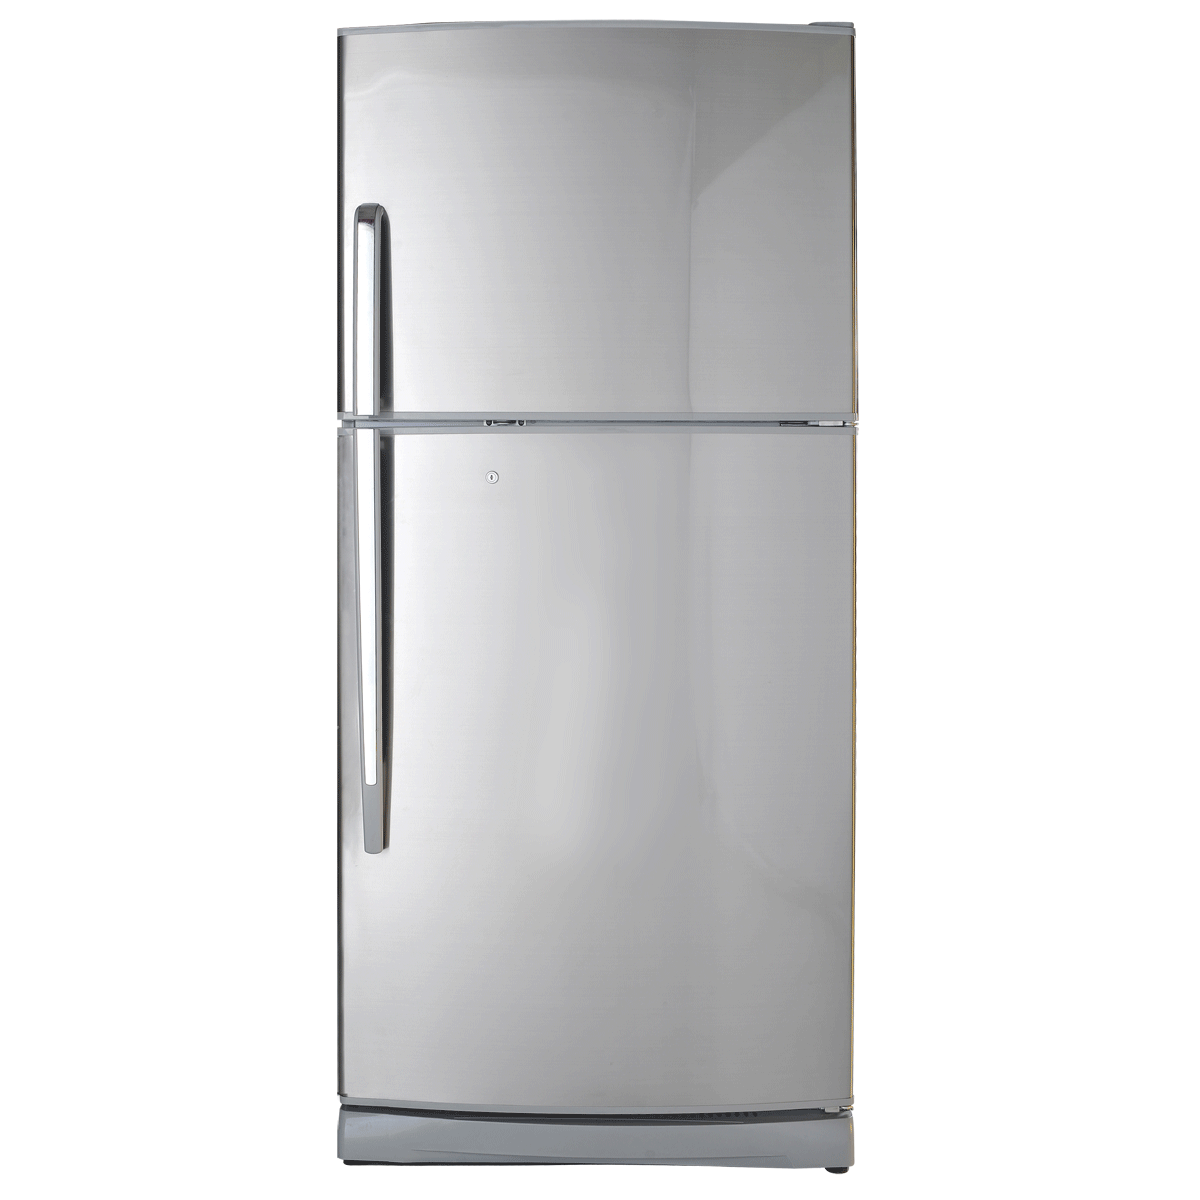 Immagini trasparenti del frigorifero